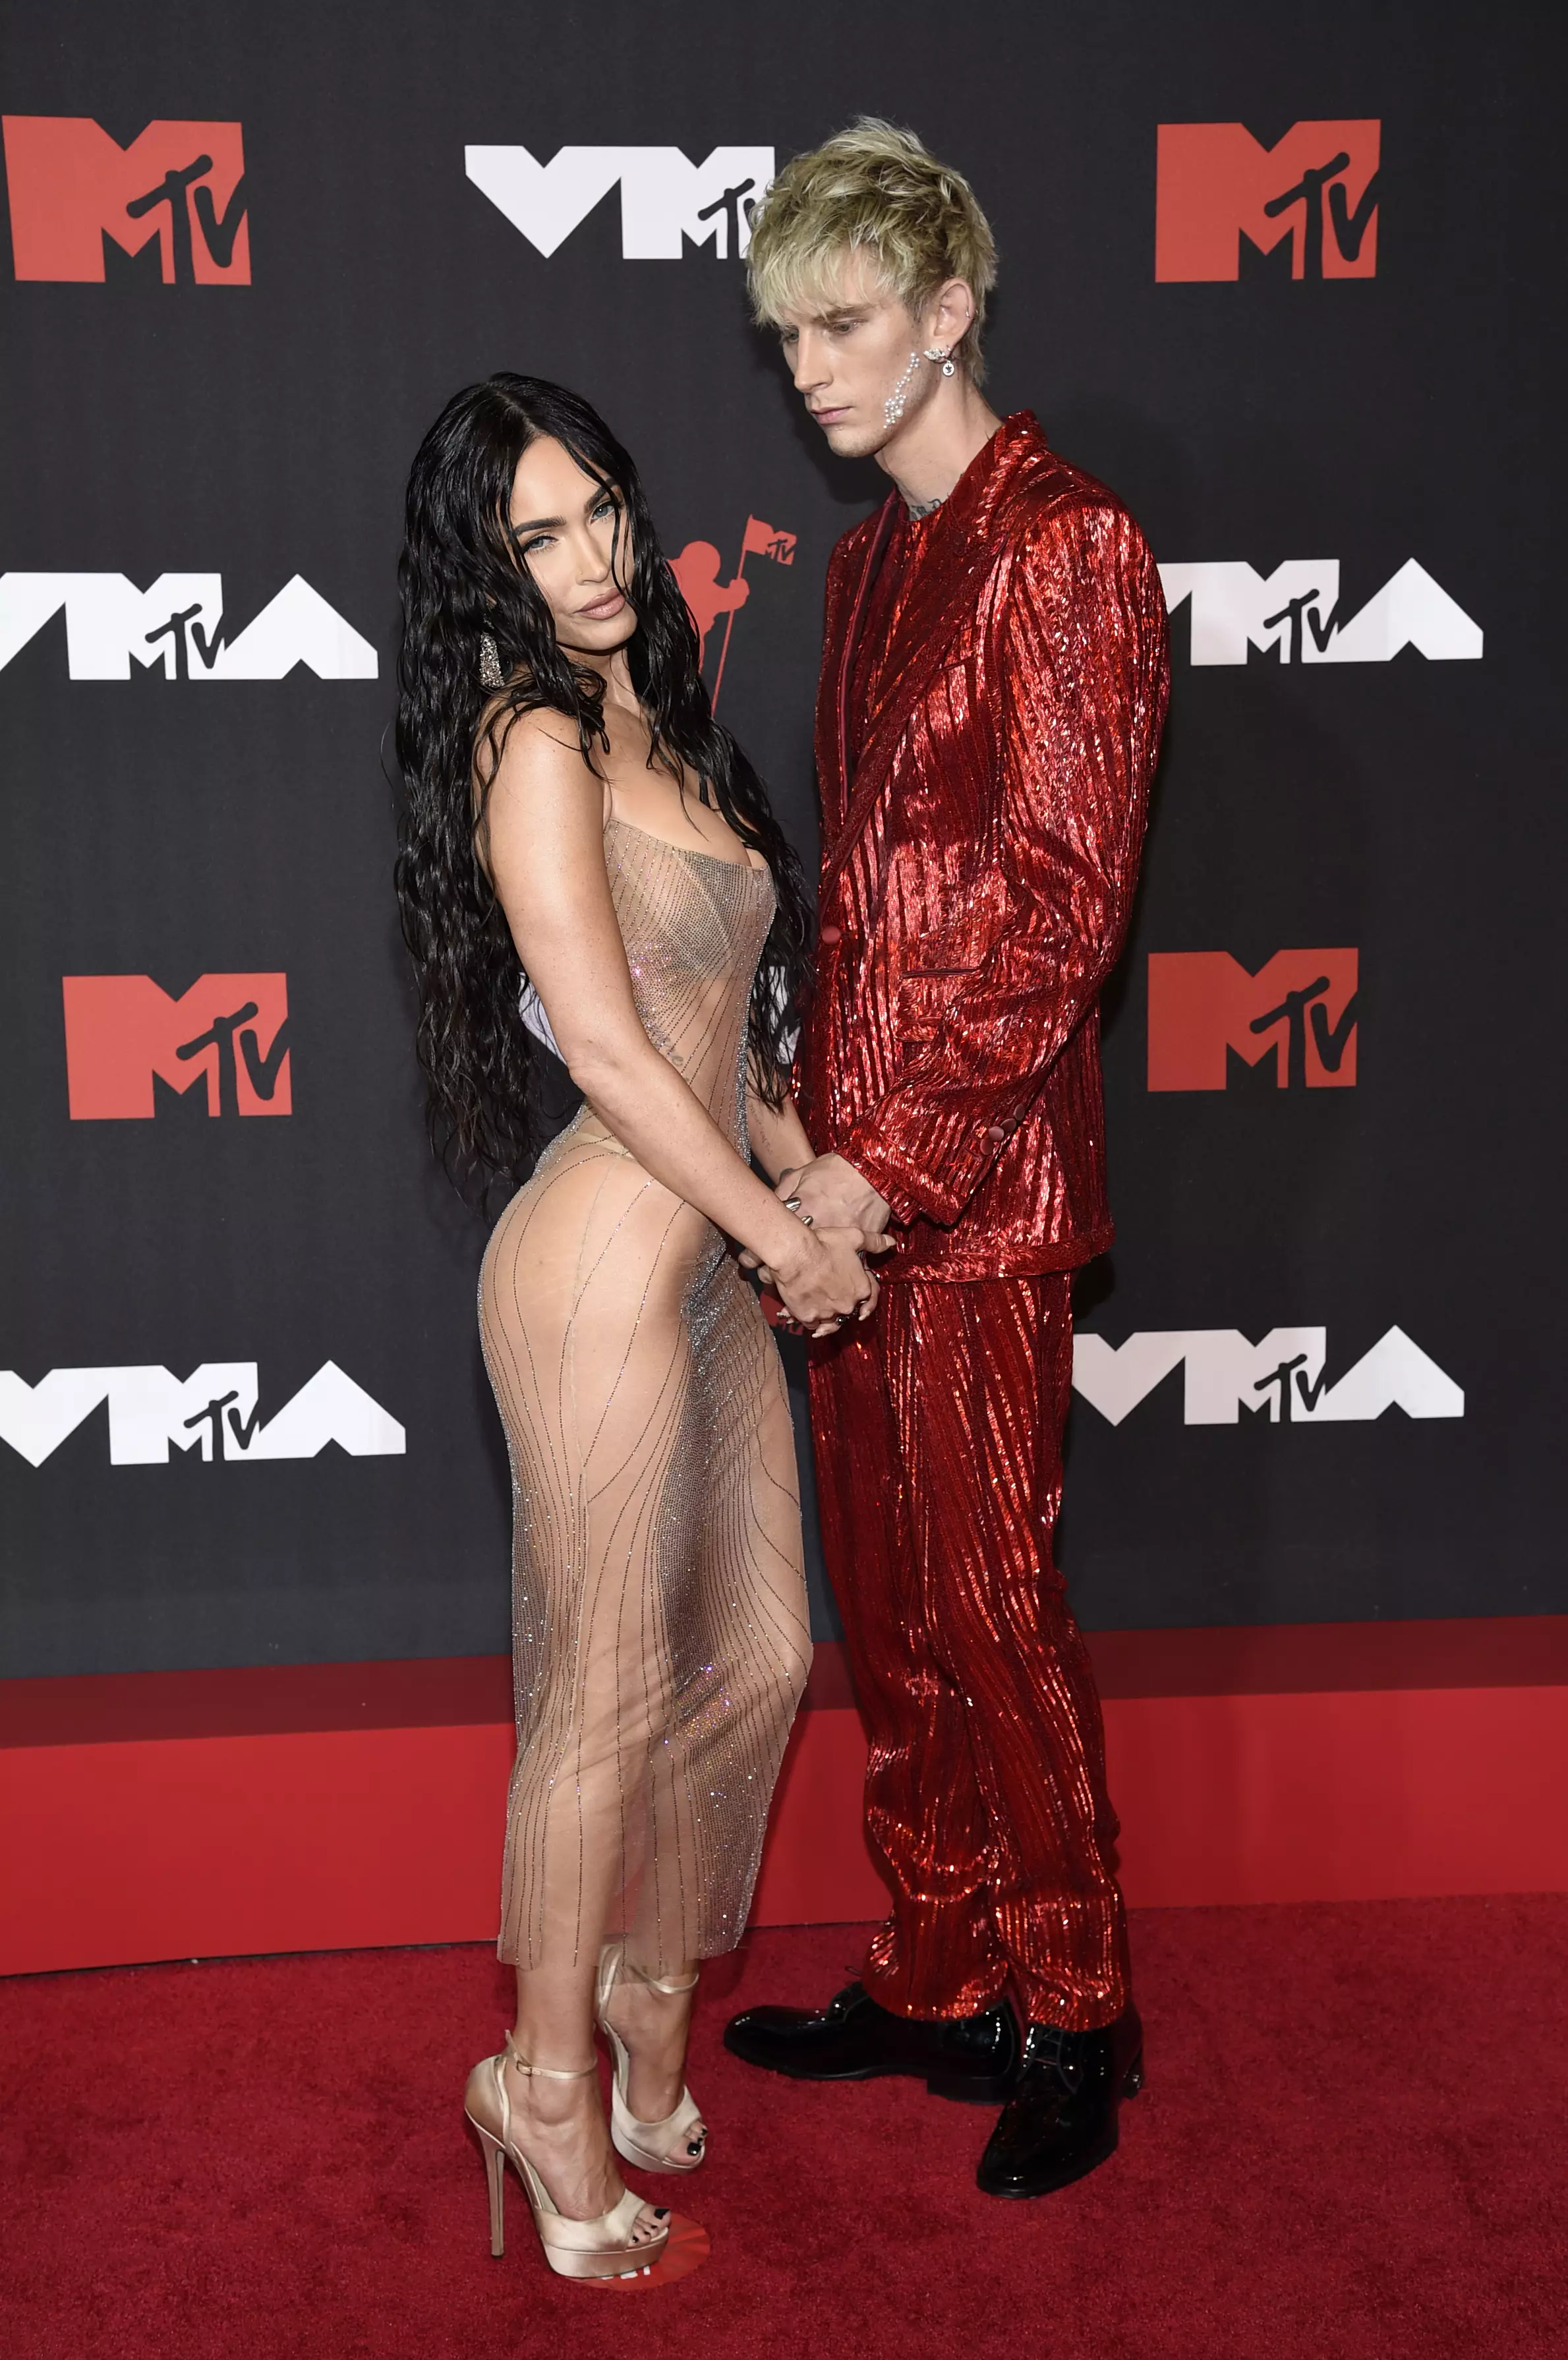 MGK and Megan Fox at the MTV Video Music Awards 2021. (